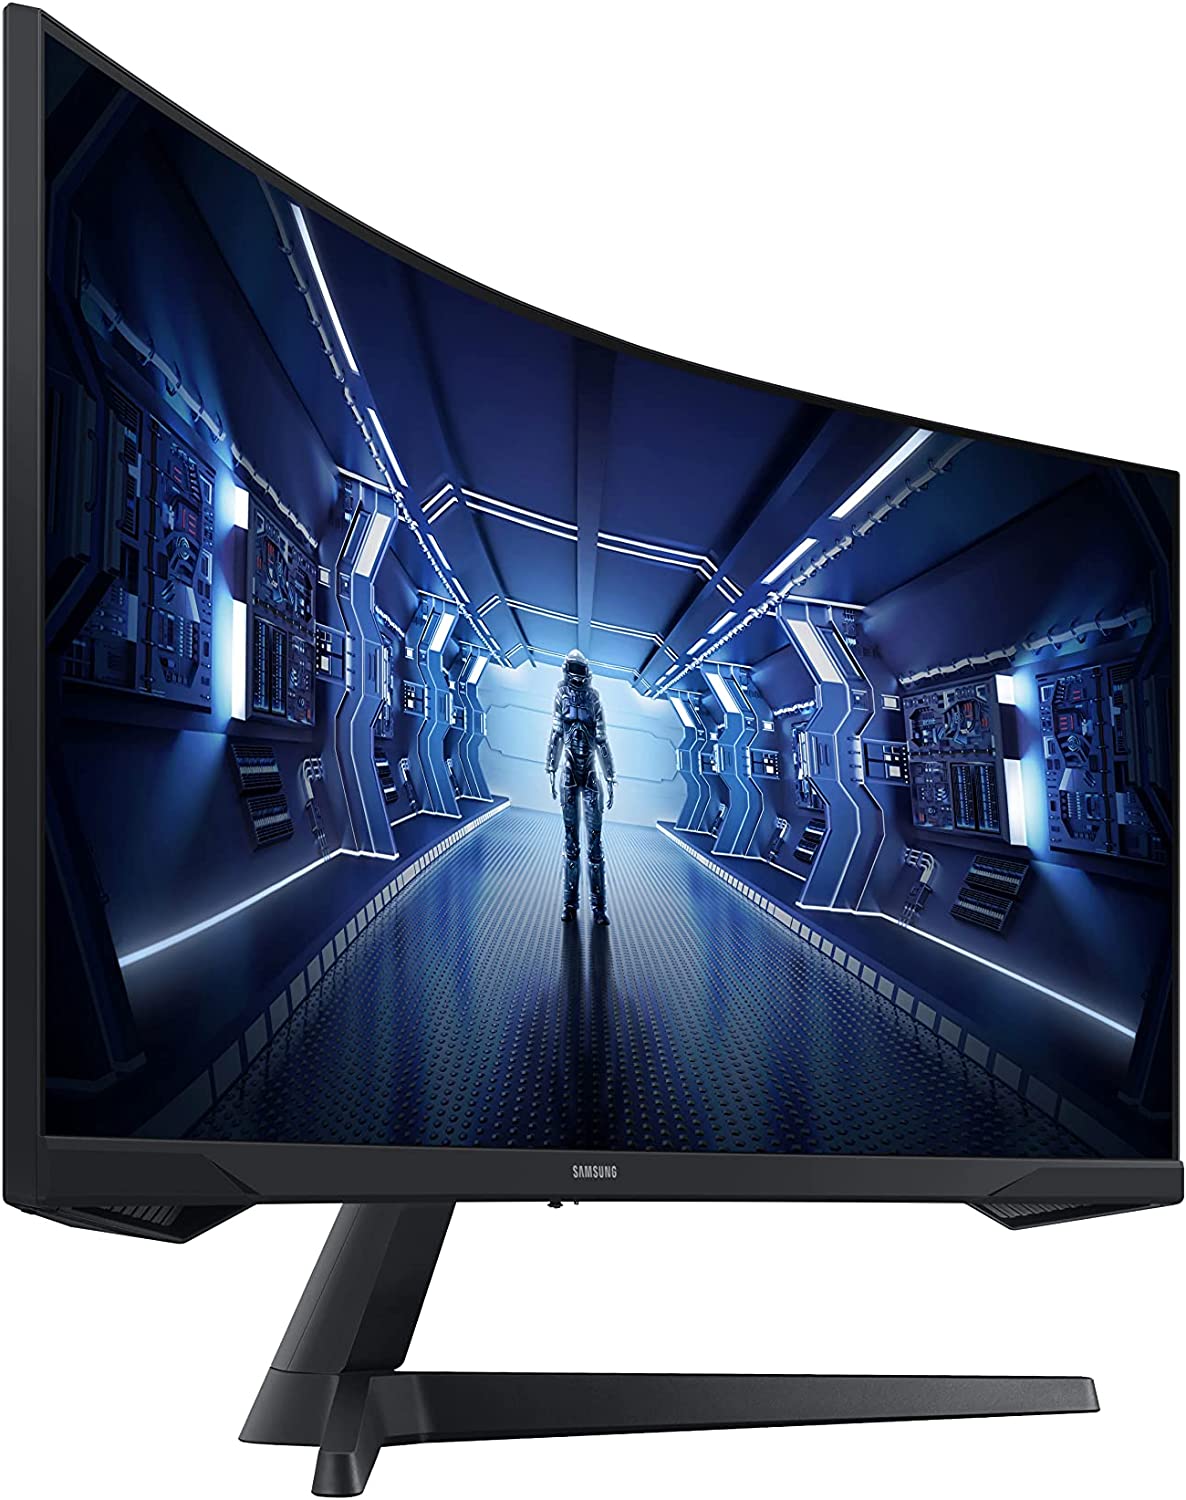 SAMSUNG Odyssey G5 LC34G55TWWPXXU Wide Quad HD 34" Curved VA LCD Gaming Monitor - Black - SamaTechs